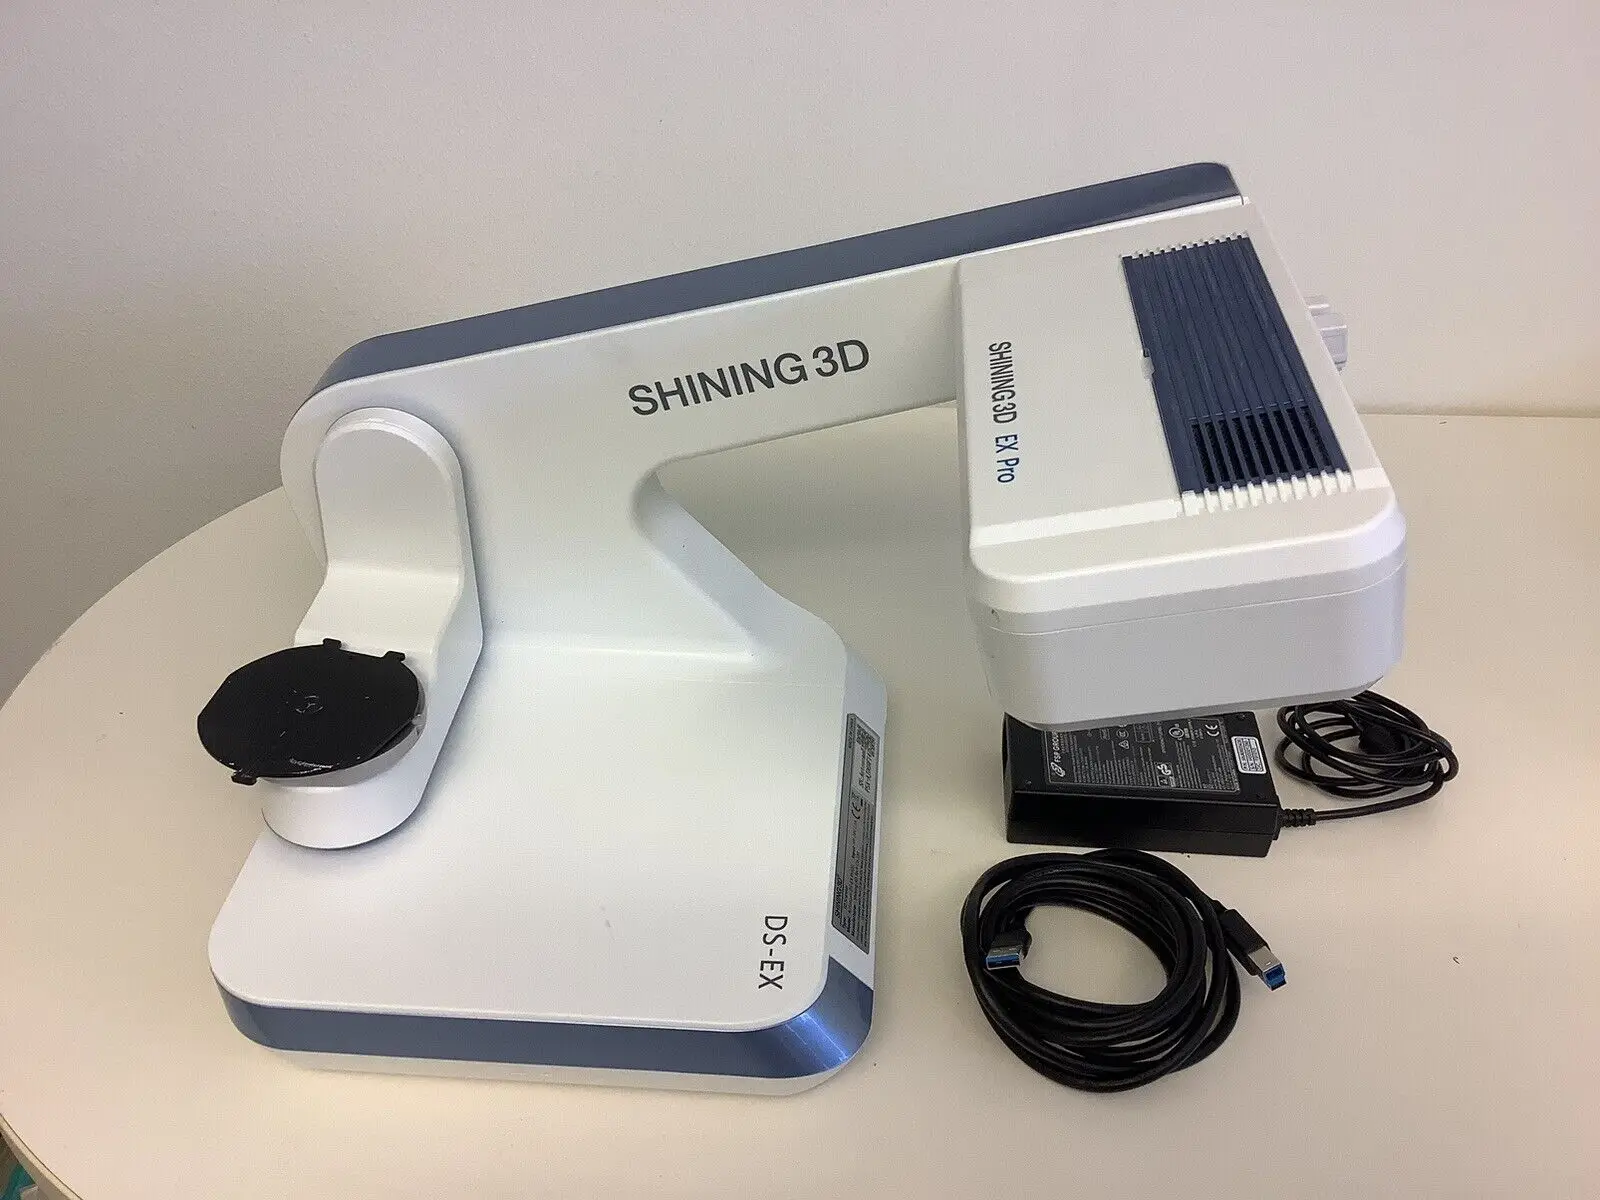 

Shining Autoscan DS-EX Pro Dental Scanner Laboratory Scanner 3D Scanner